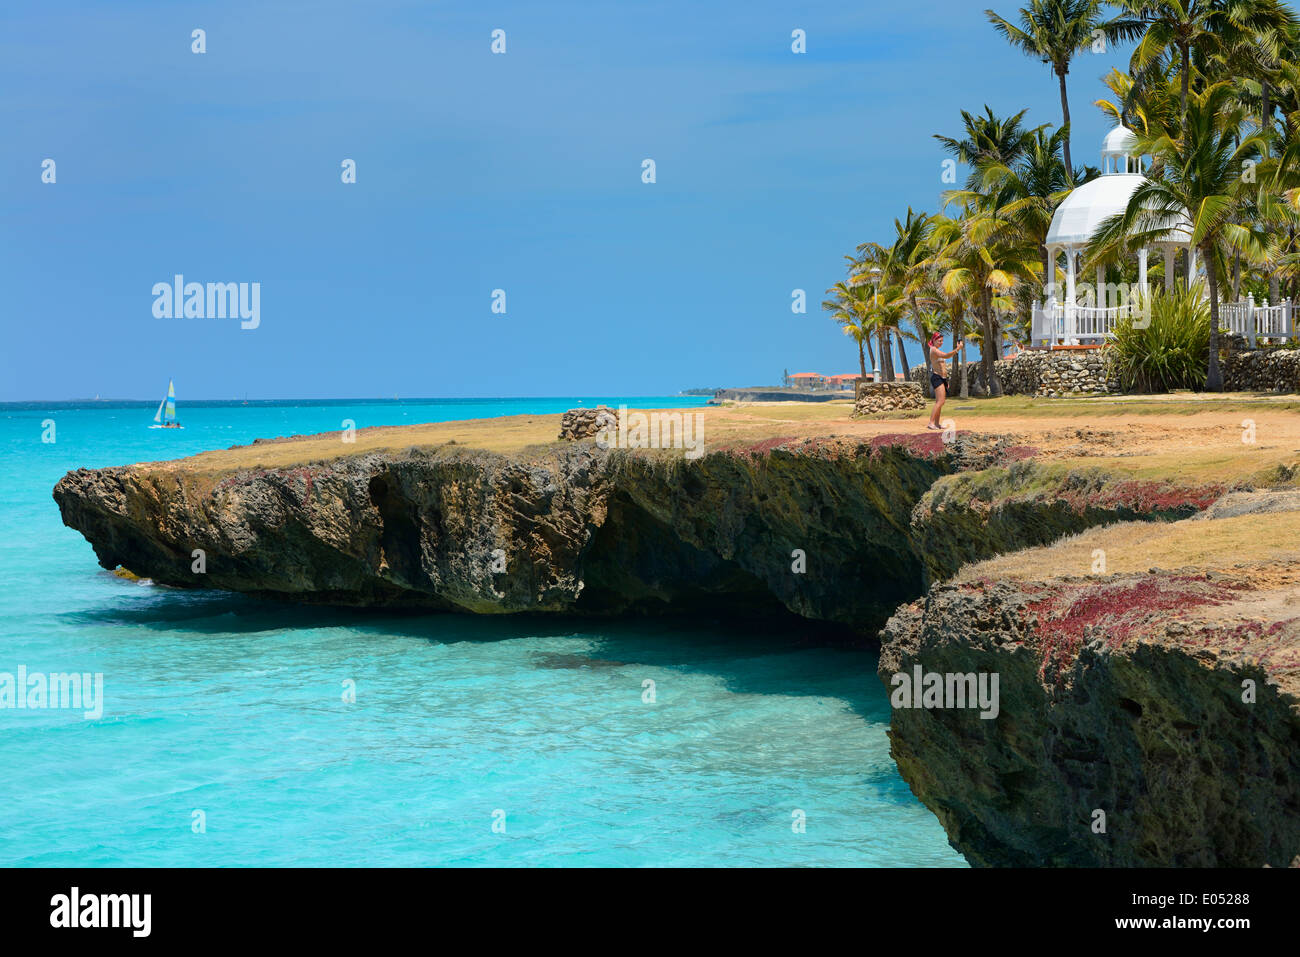 Selfie turistico a pietra lavica shore con foro di sfiato pozzetti palme e gazebo a Varadero Matanzas Cuba resort acque turchesi dell'oceano Atlantico Foto Stock